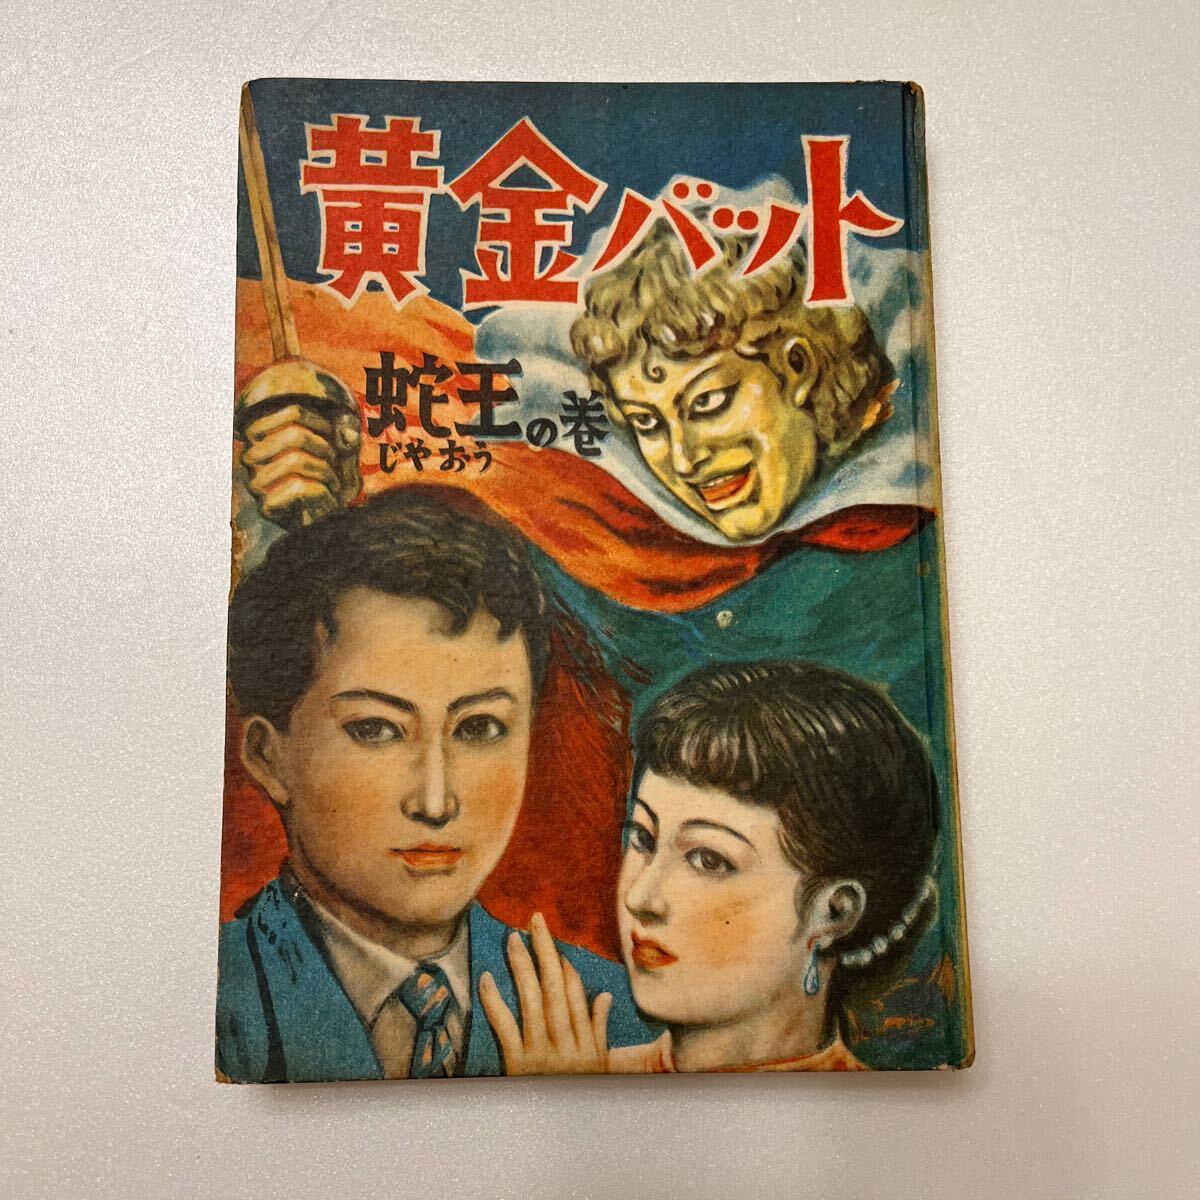  желтый золотой bat ... шт Showa 27 год выпуск автор .. futoshi .... остров книжный магазин выпуск первая версия книга@ подросток манга детский книга с картинками 